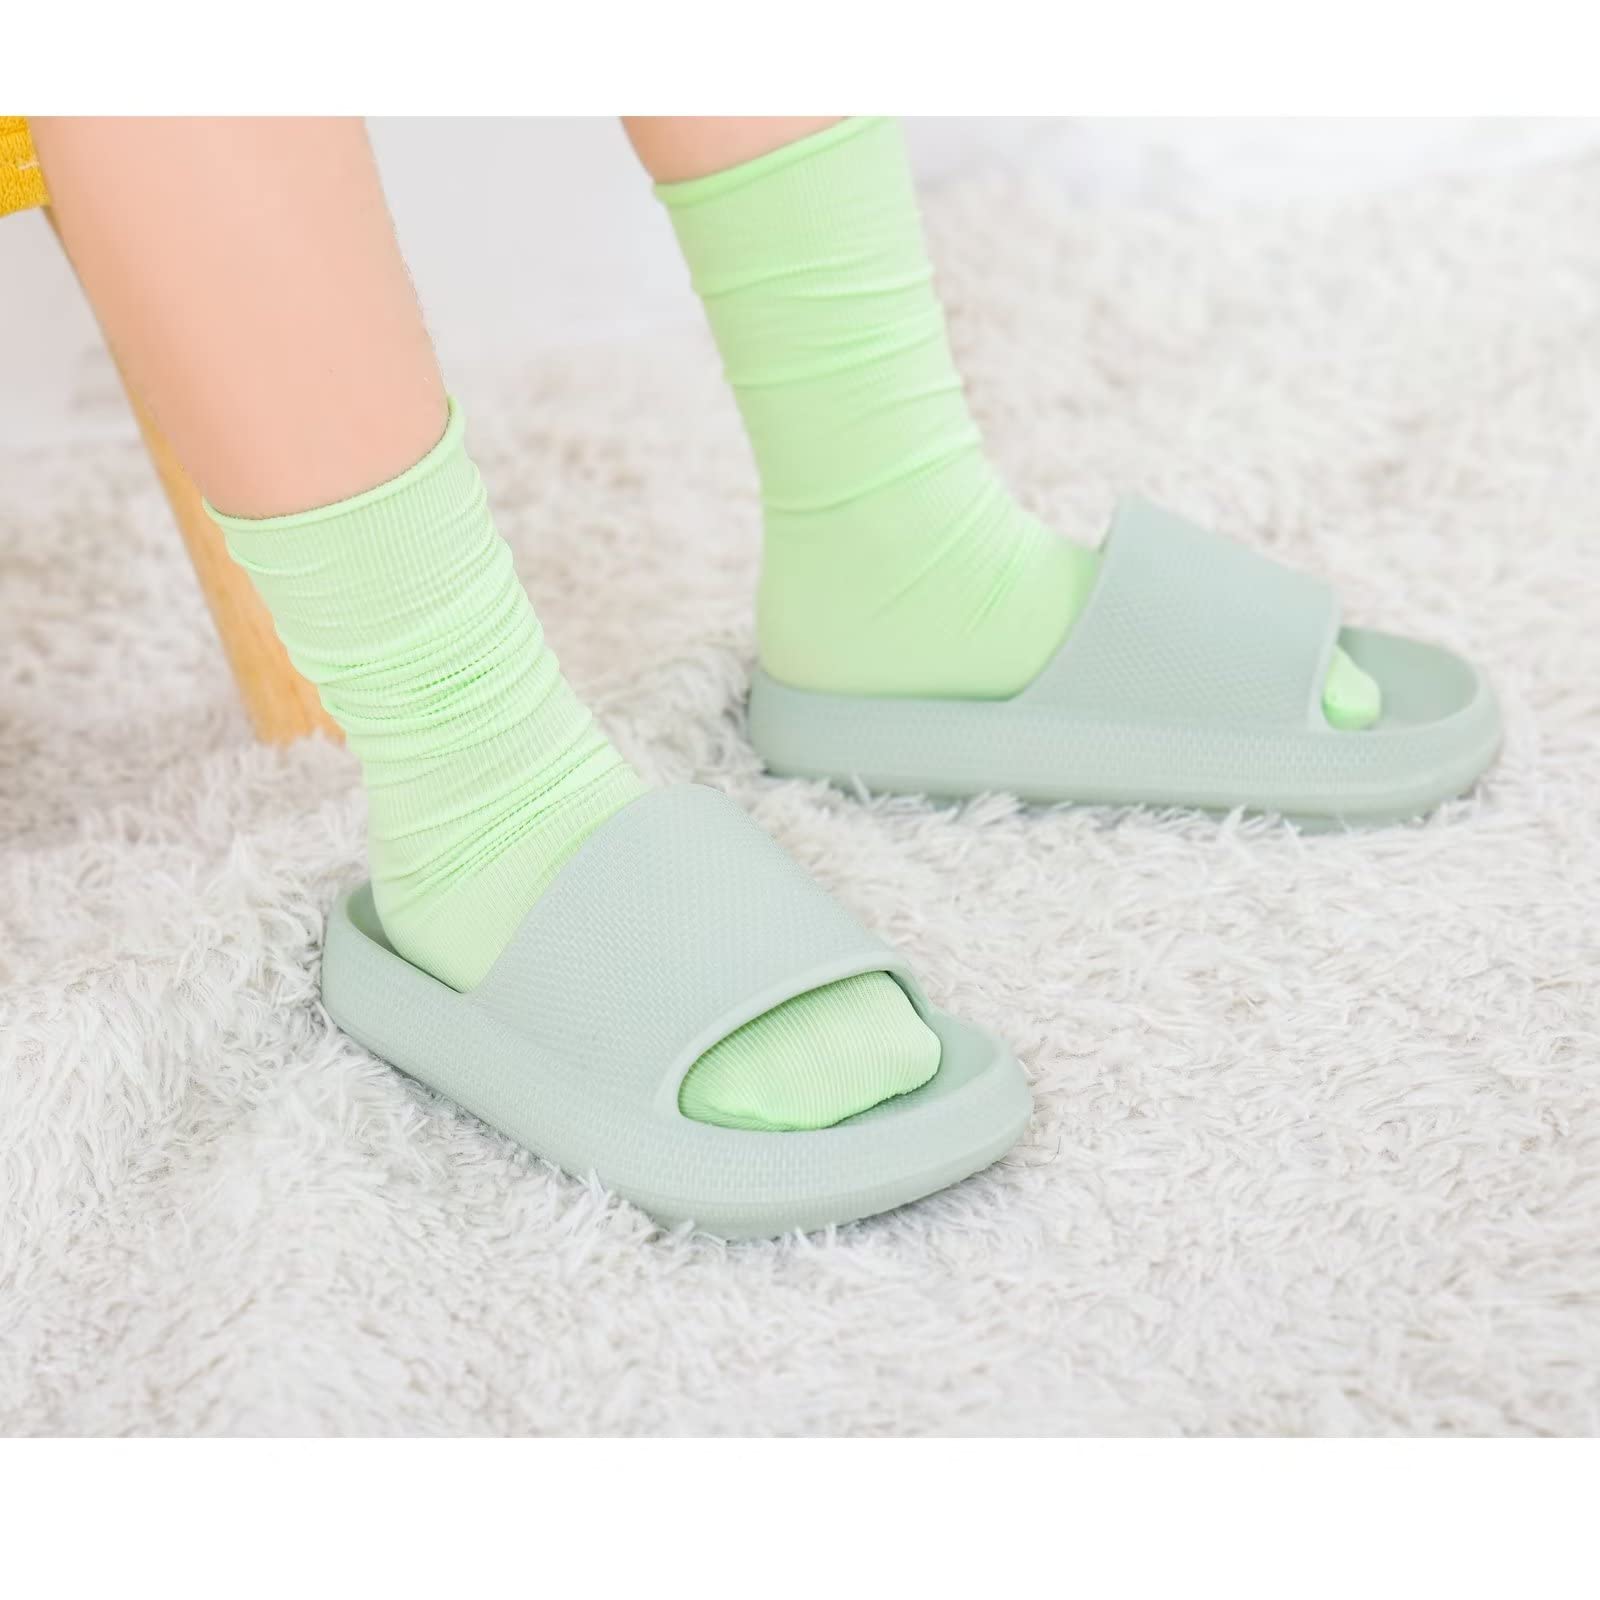 KOUECI Kids Cloud Slides Boys Girls Pillow Slides Slip on Shower Slides Non-slip Summer Beach Pool Shoes